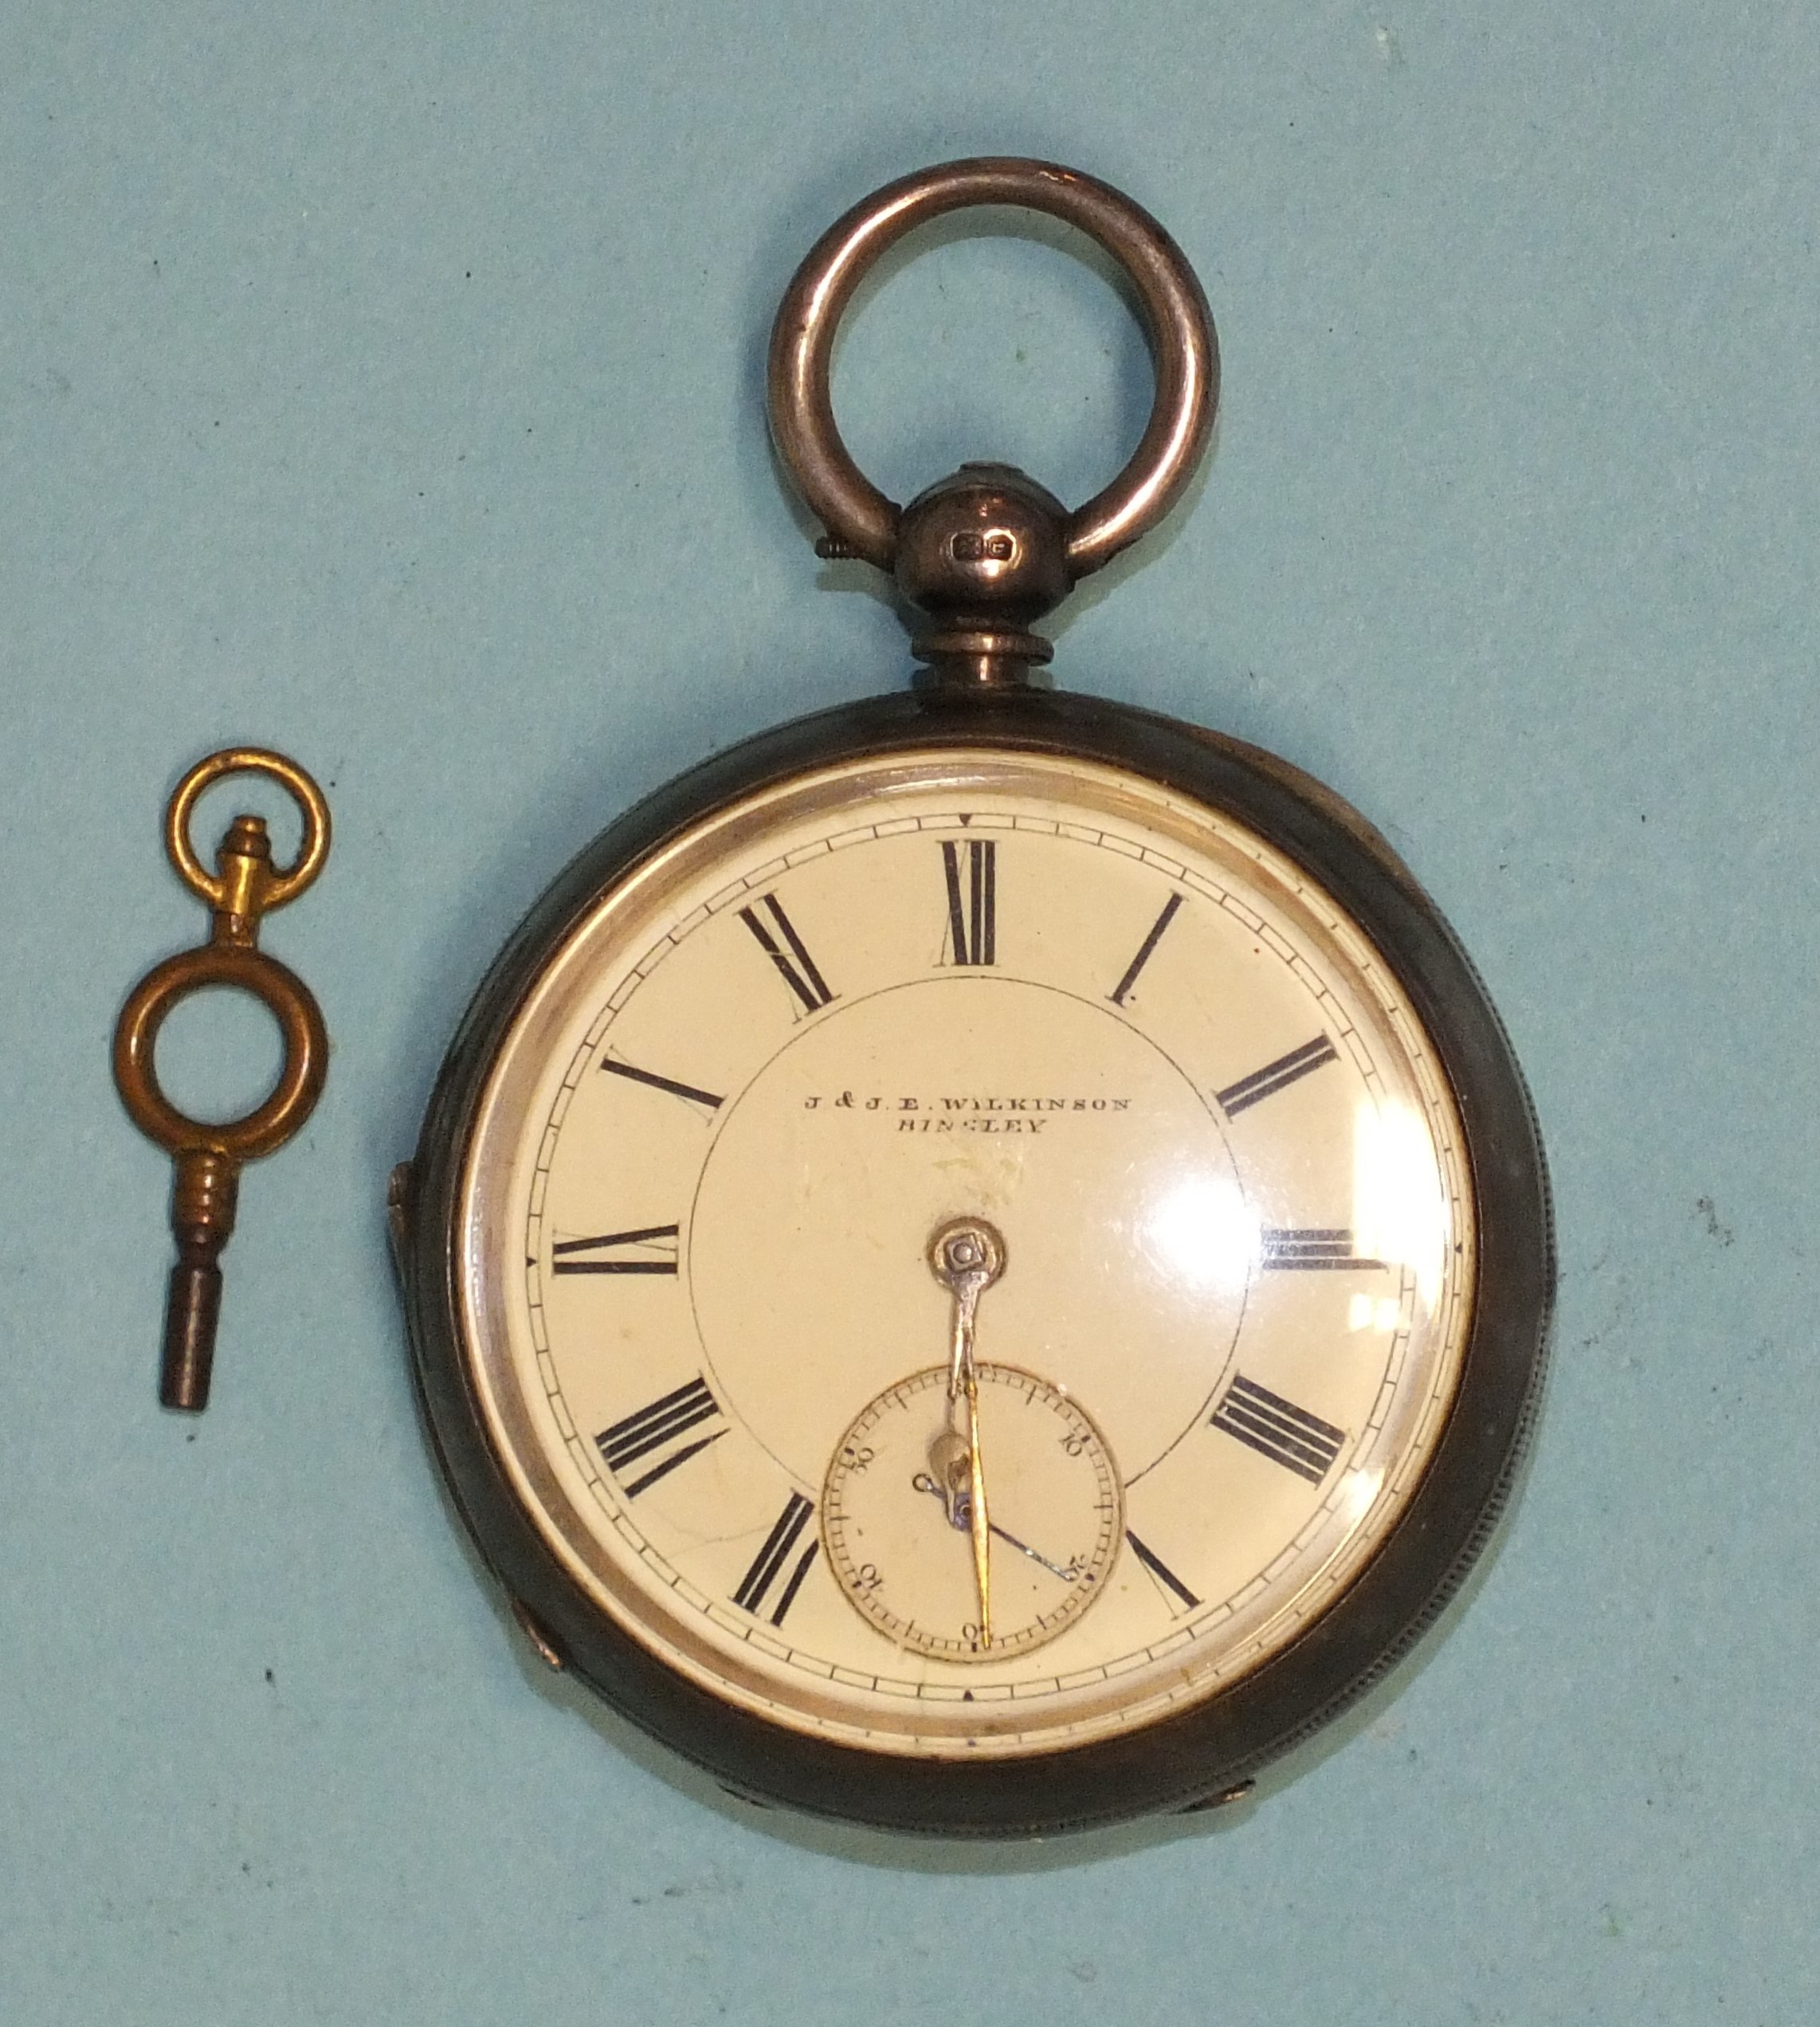 J & JE Wilkinson, Bingley, a silver-cased open-face key-wind pocket watch, the white enamel dial